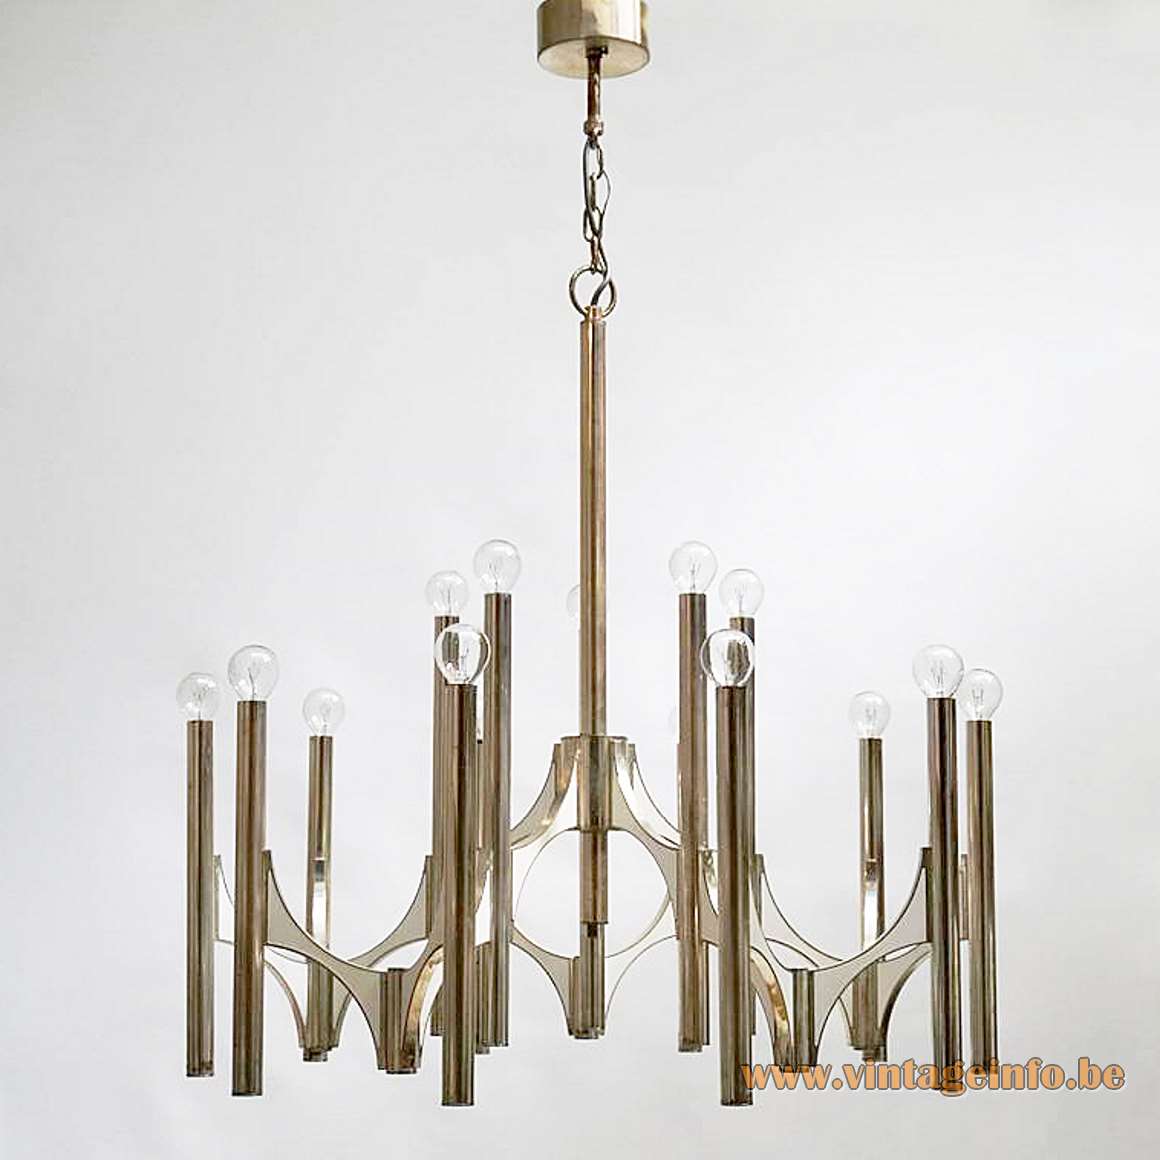 Gaetano Sciolari Orbit chandelier chrome curved metal aluminium rods tubes chain candlestick 1960s 1970s Italy design